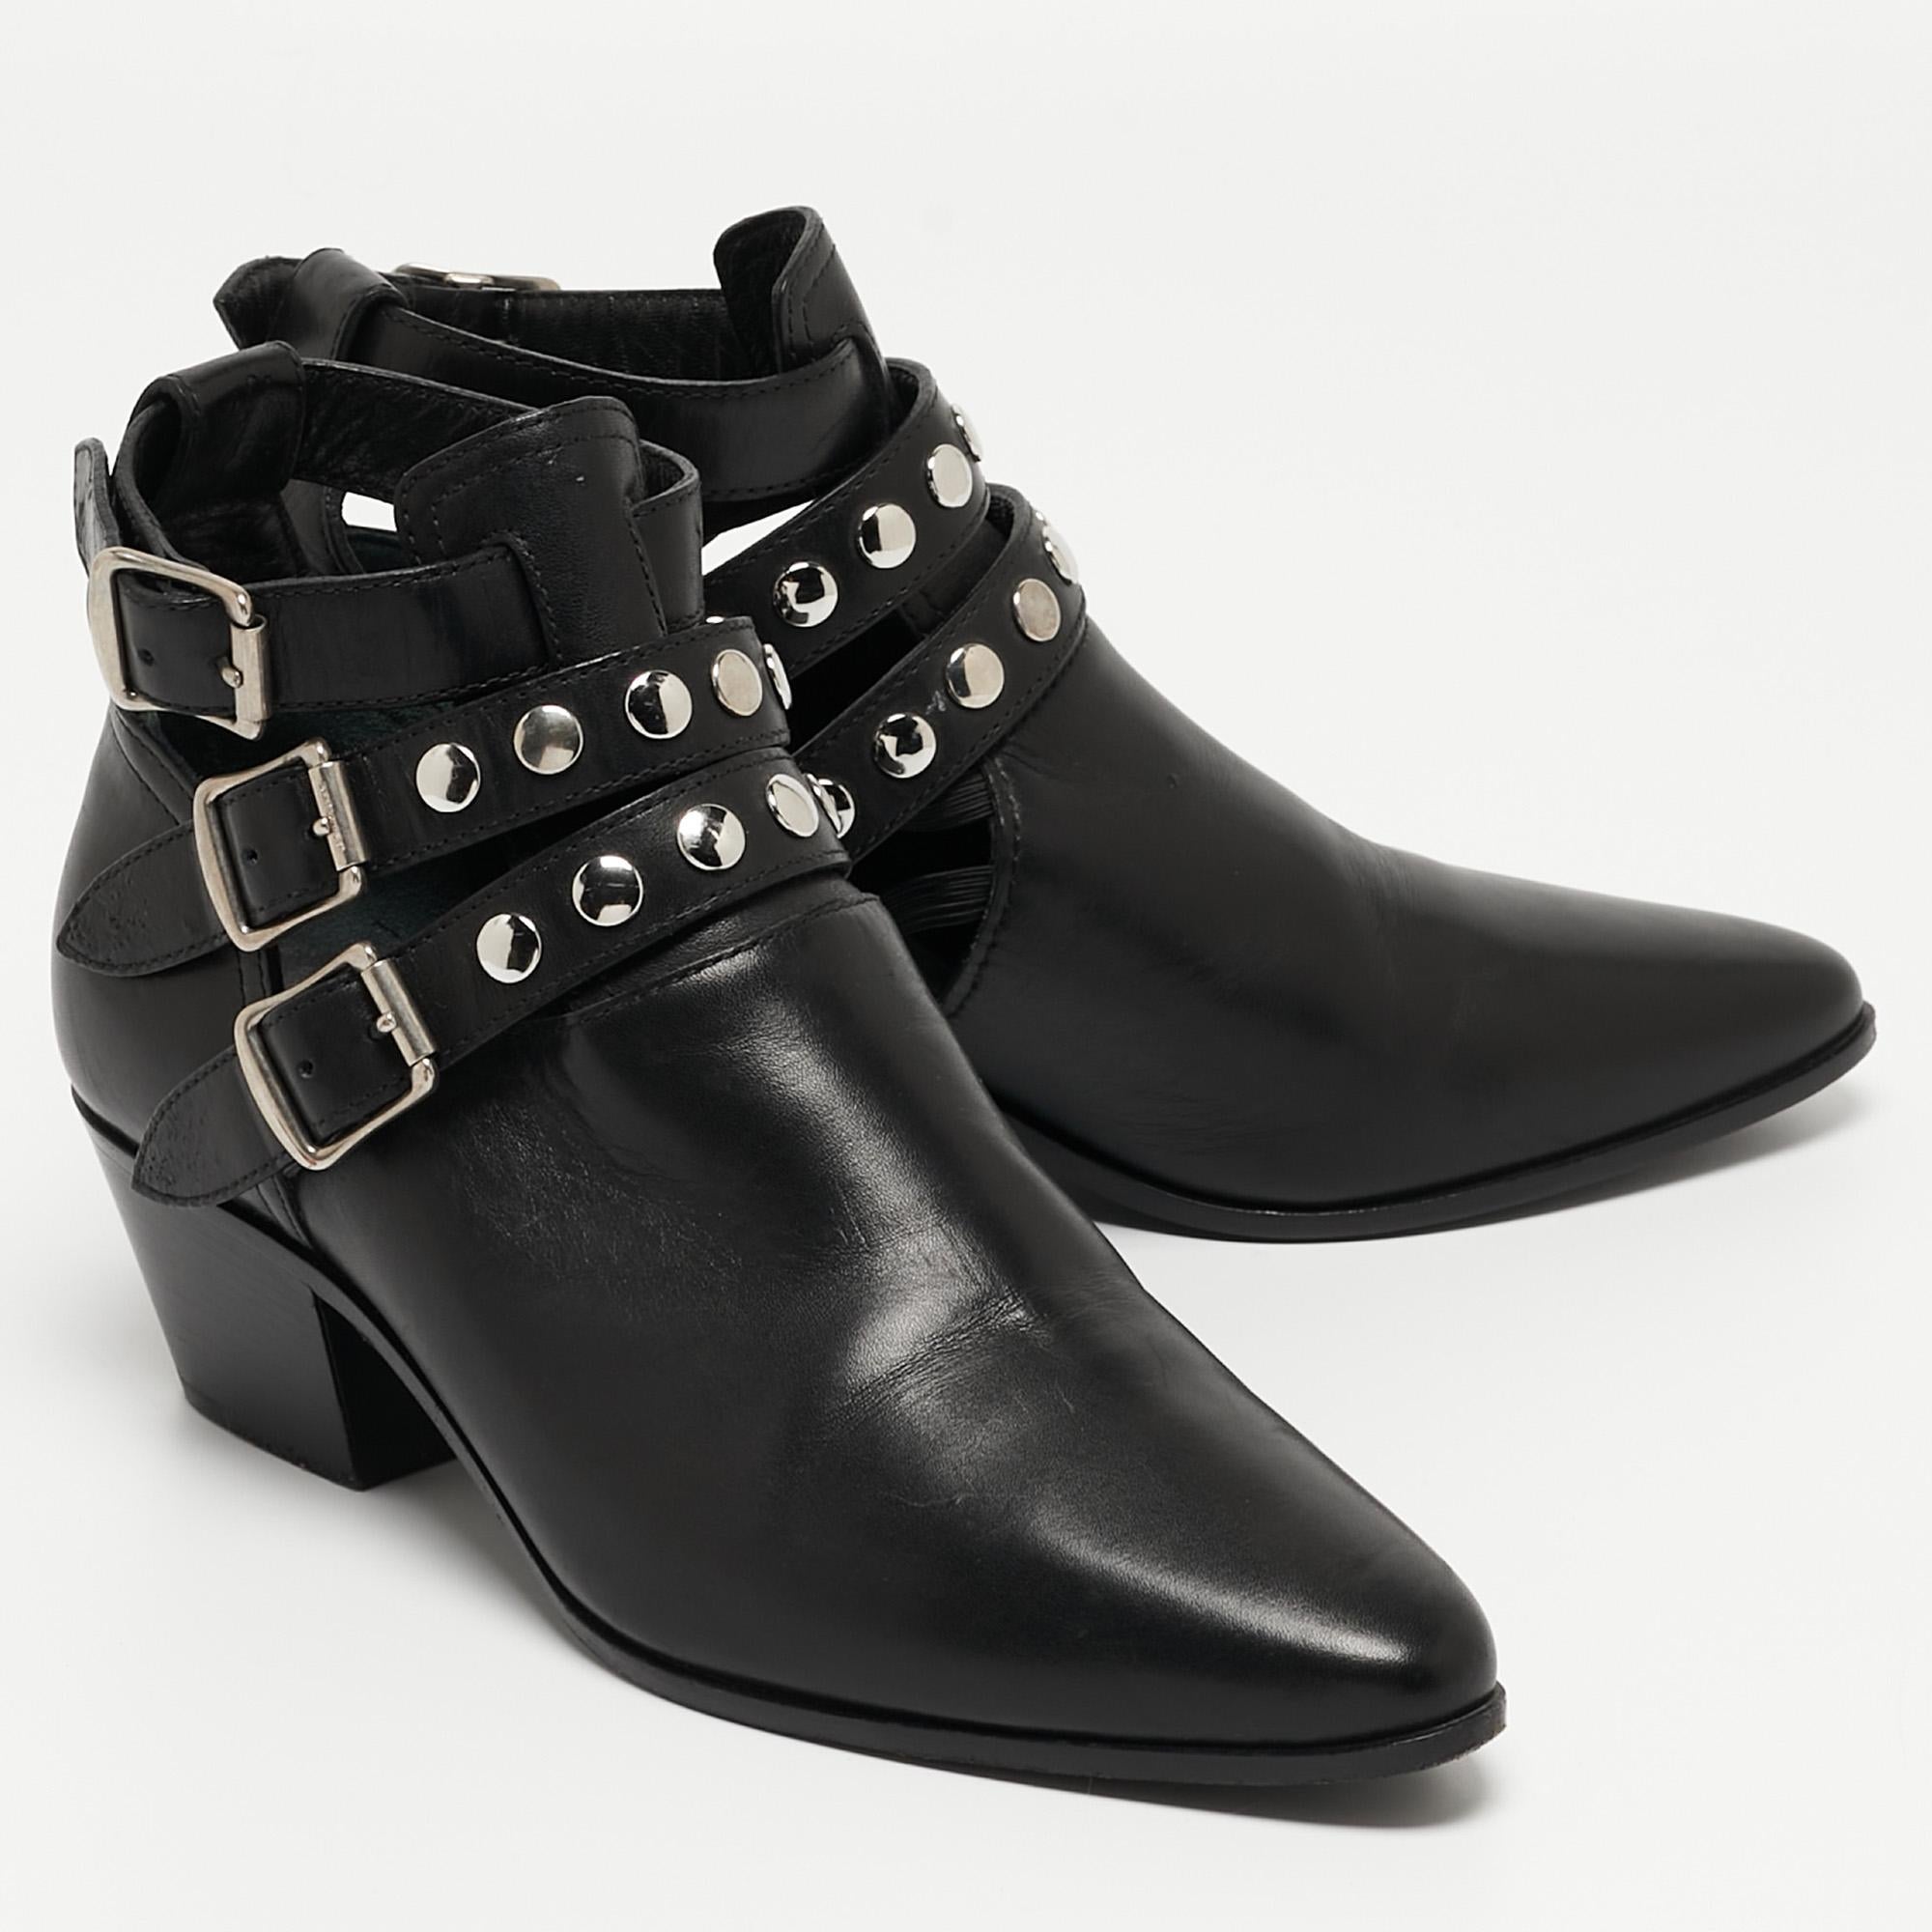 Saint Laurent Black Leather Ankle Boots Size 35 In Good Condition For Sale In Dubai, Al Qouz 2